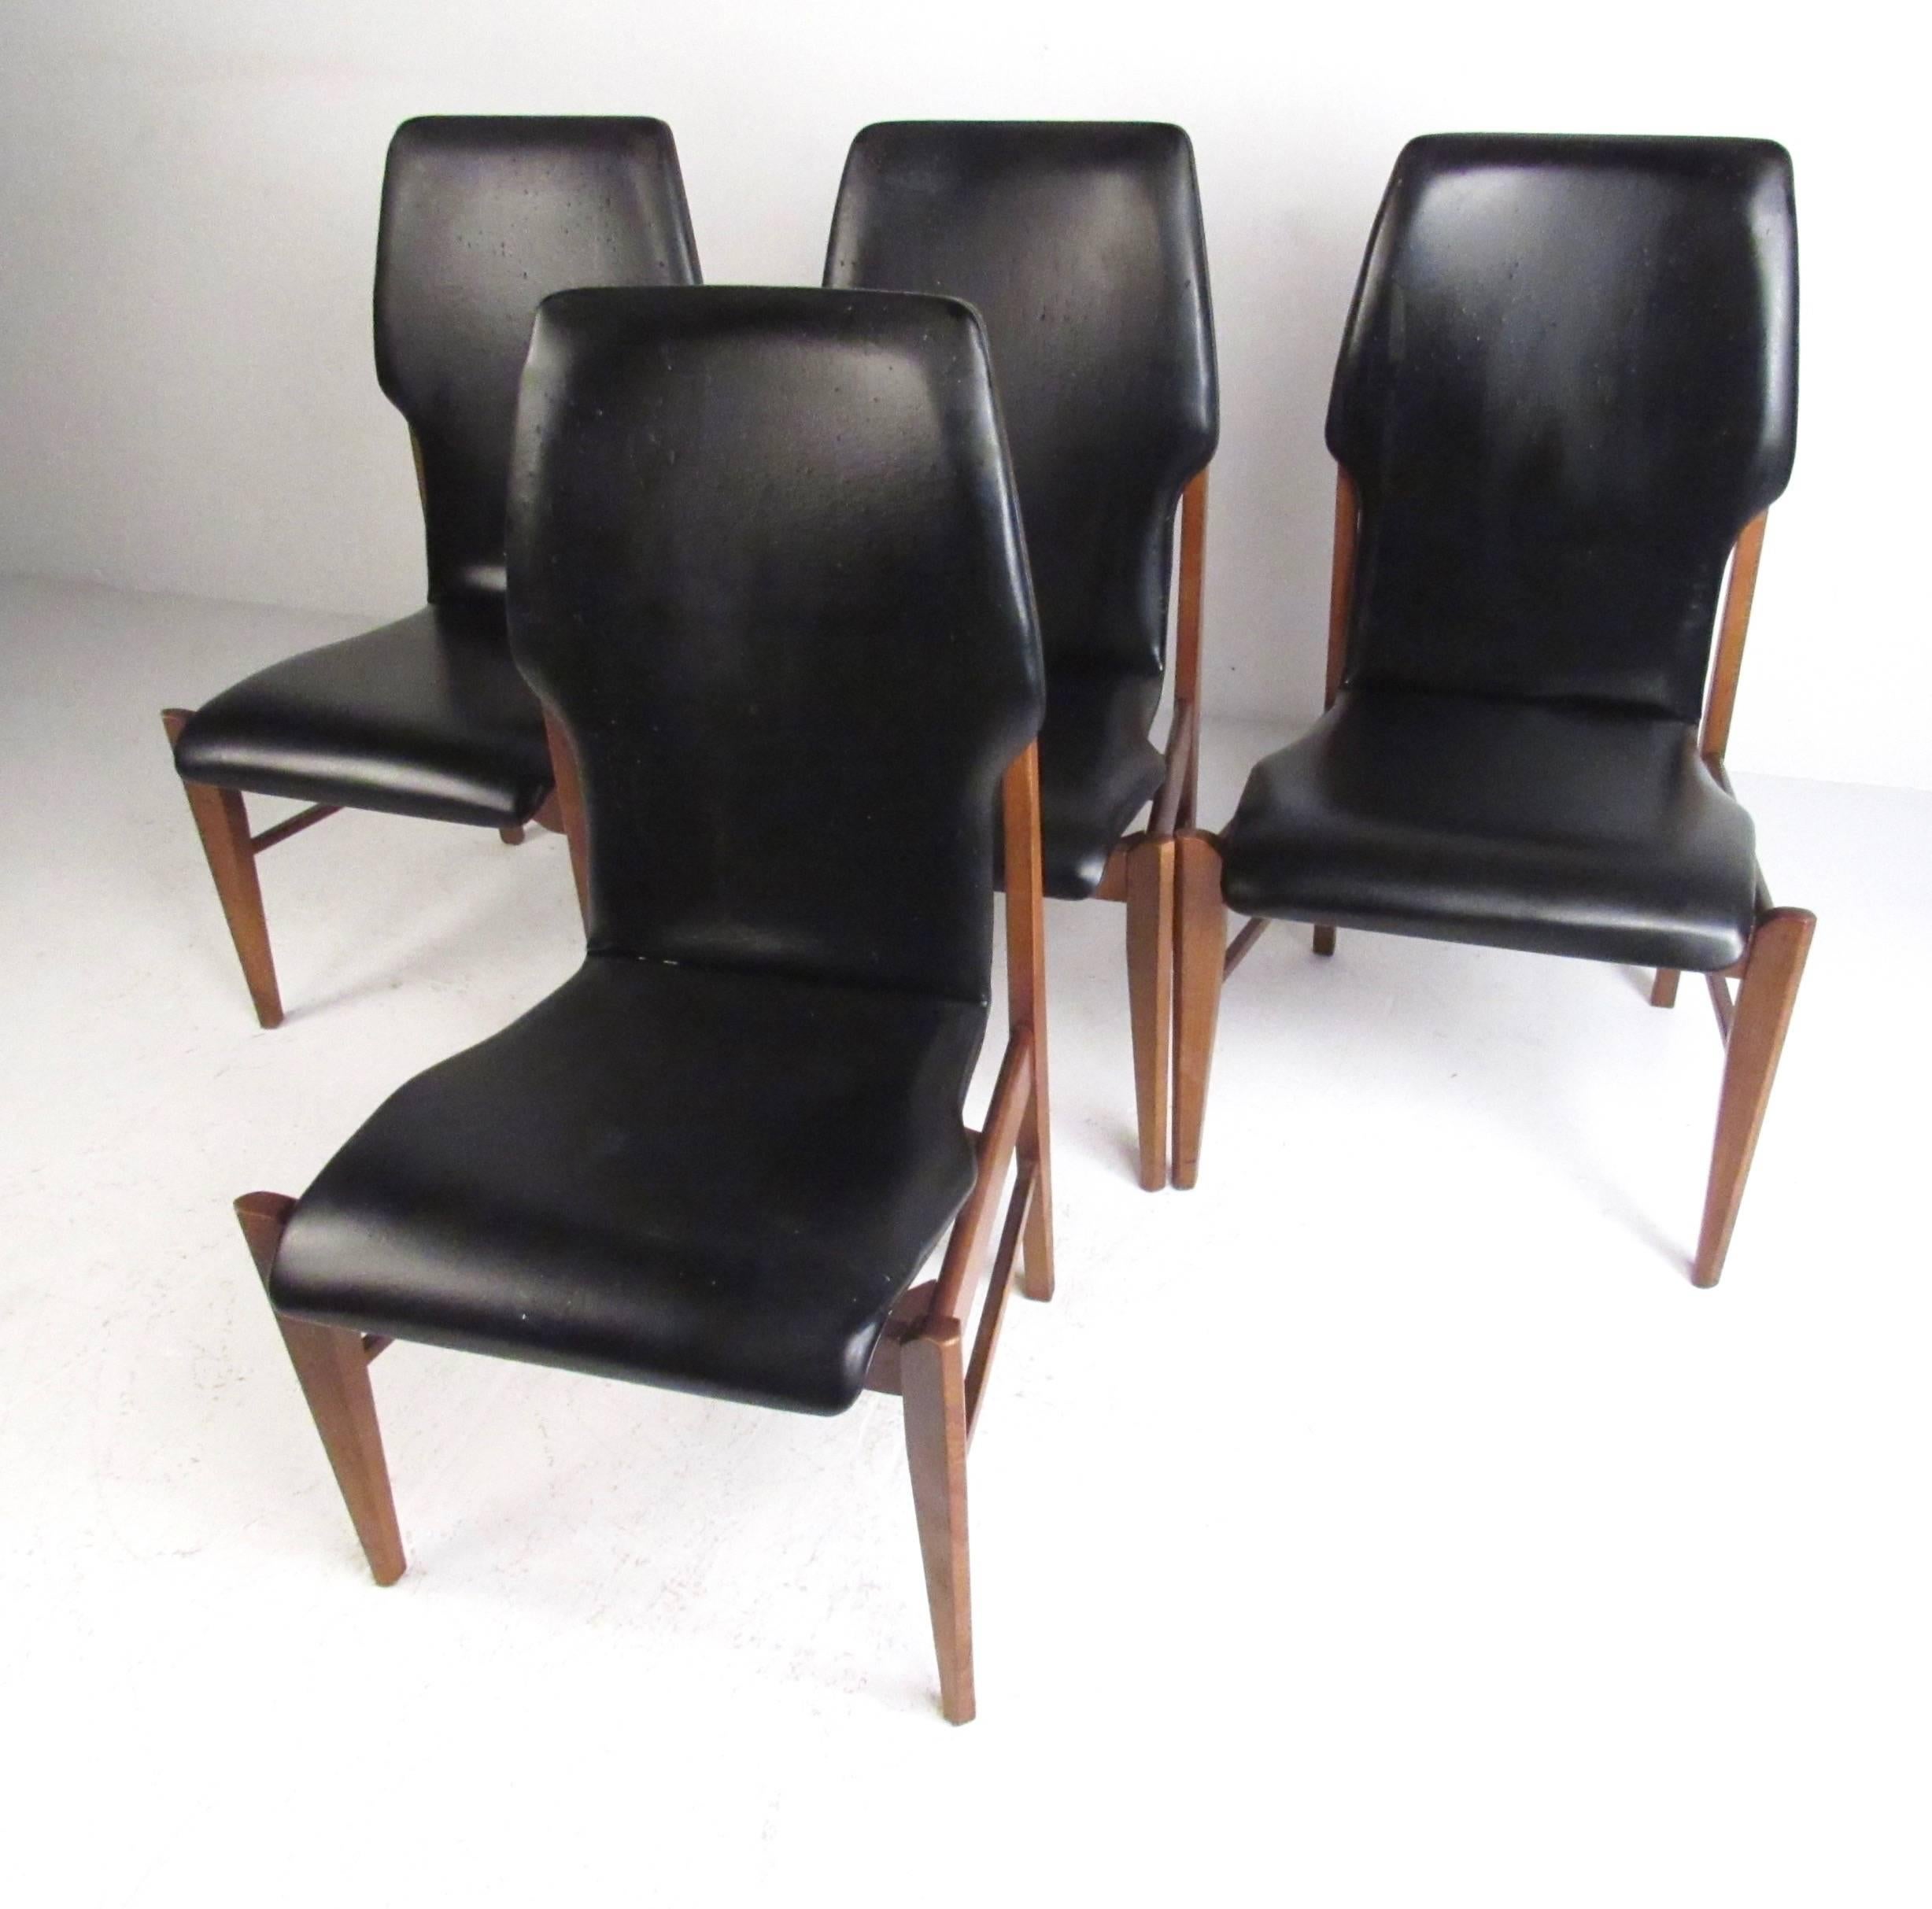 Dieses stilvolle Set aus vier passenden Esszimmerstühlen bietet eine formschöne, mit Vinyl bezogene Sitzfläche und bequeme hohe Rückenlehnen. Hartholzrahmen aus Nussbaum mit konischen Beinen und klaren, modernen Linien unterstreichen den